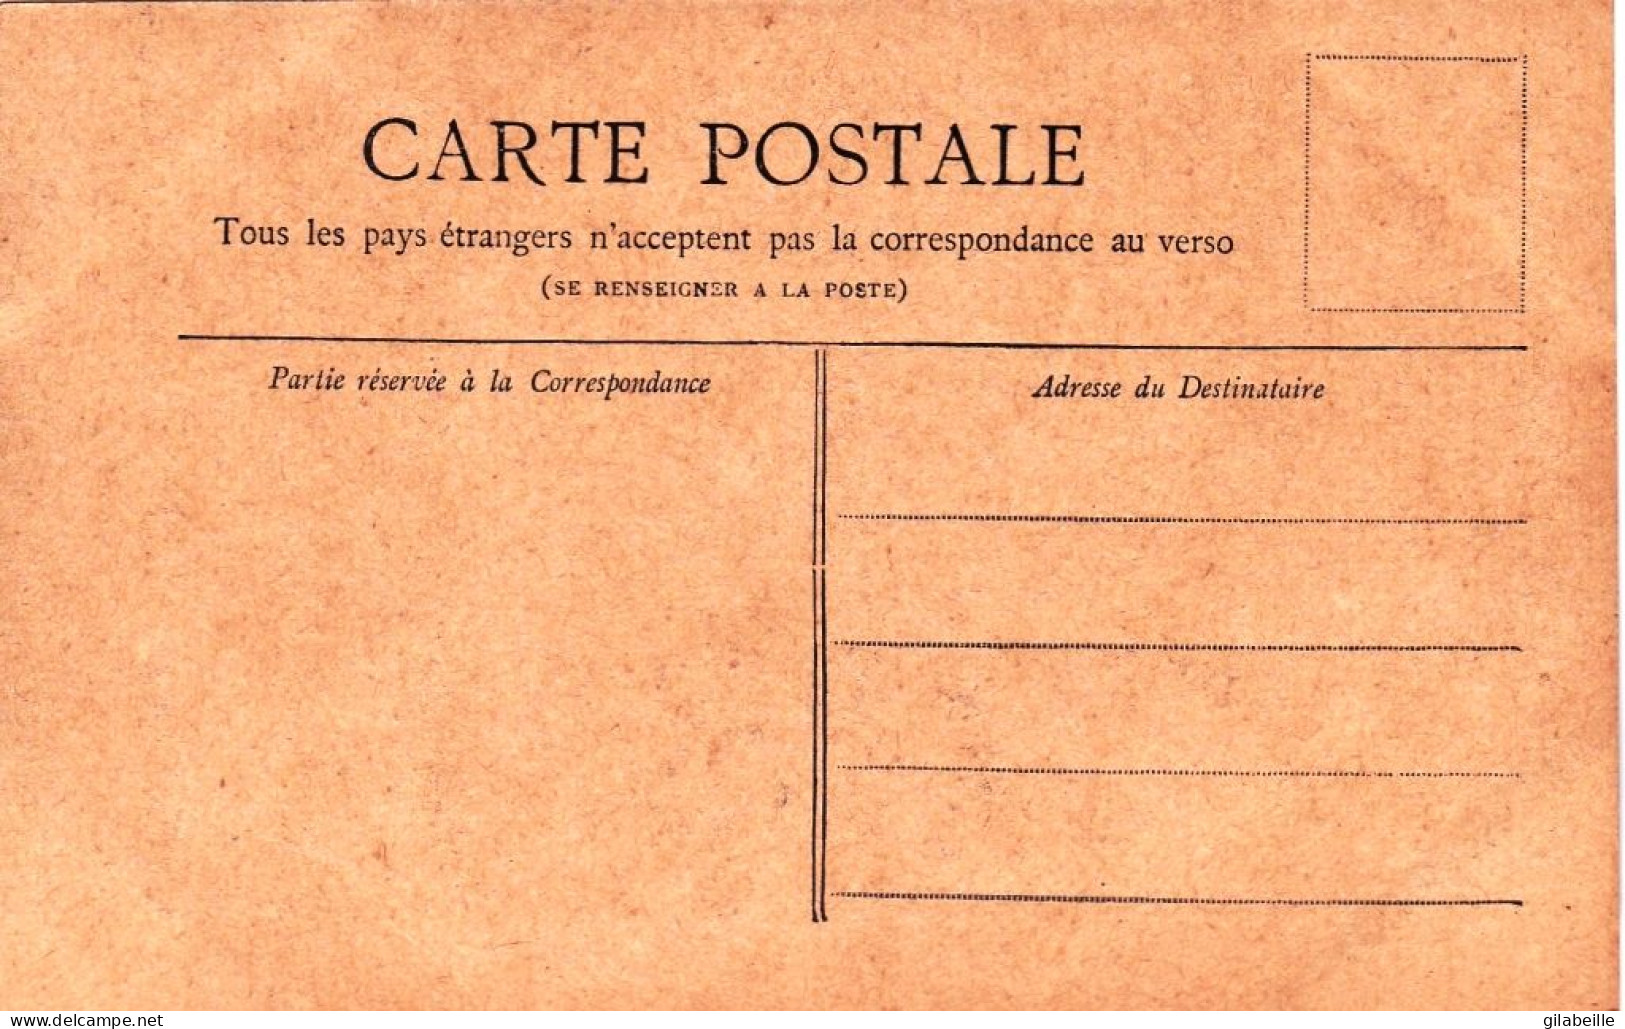 75 - PARIS 01 - Un Coin Des Halles Centrales - Collection Pettit Journal - Distretto: 01